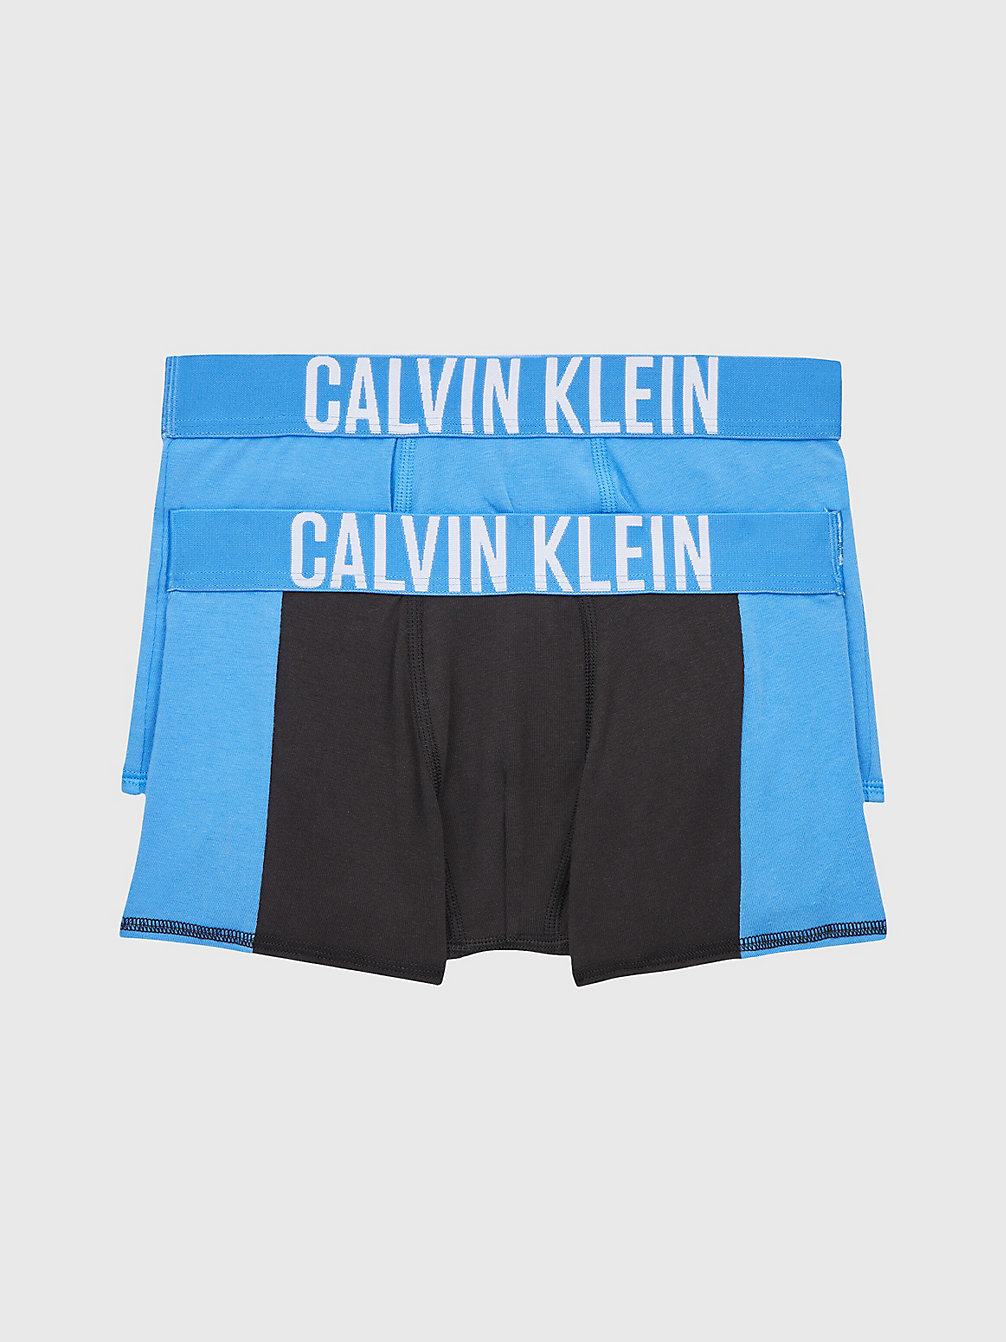 ELECTRICAQUA/PVHBLACK Lot De 2 Boxers Pour Garçon - Intense Power undefined boys Calvin Klein